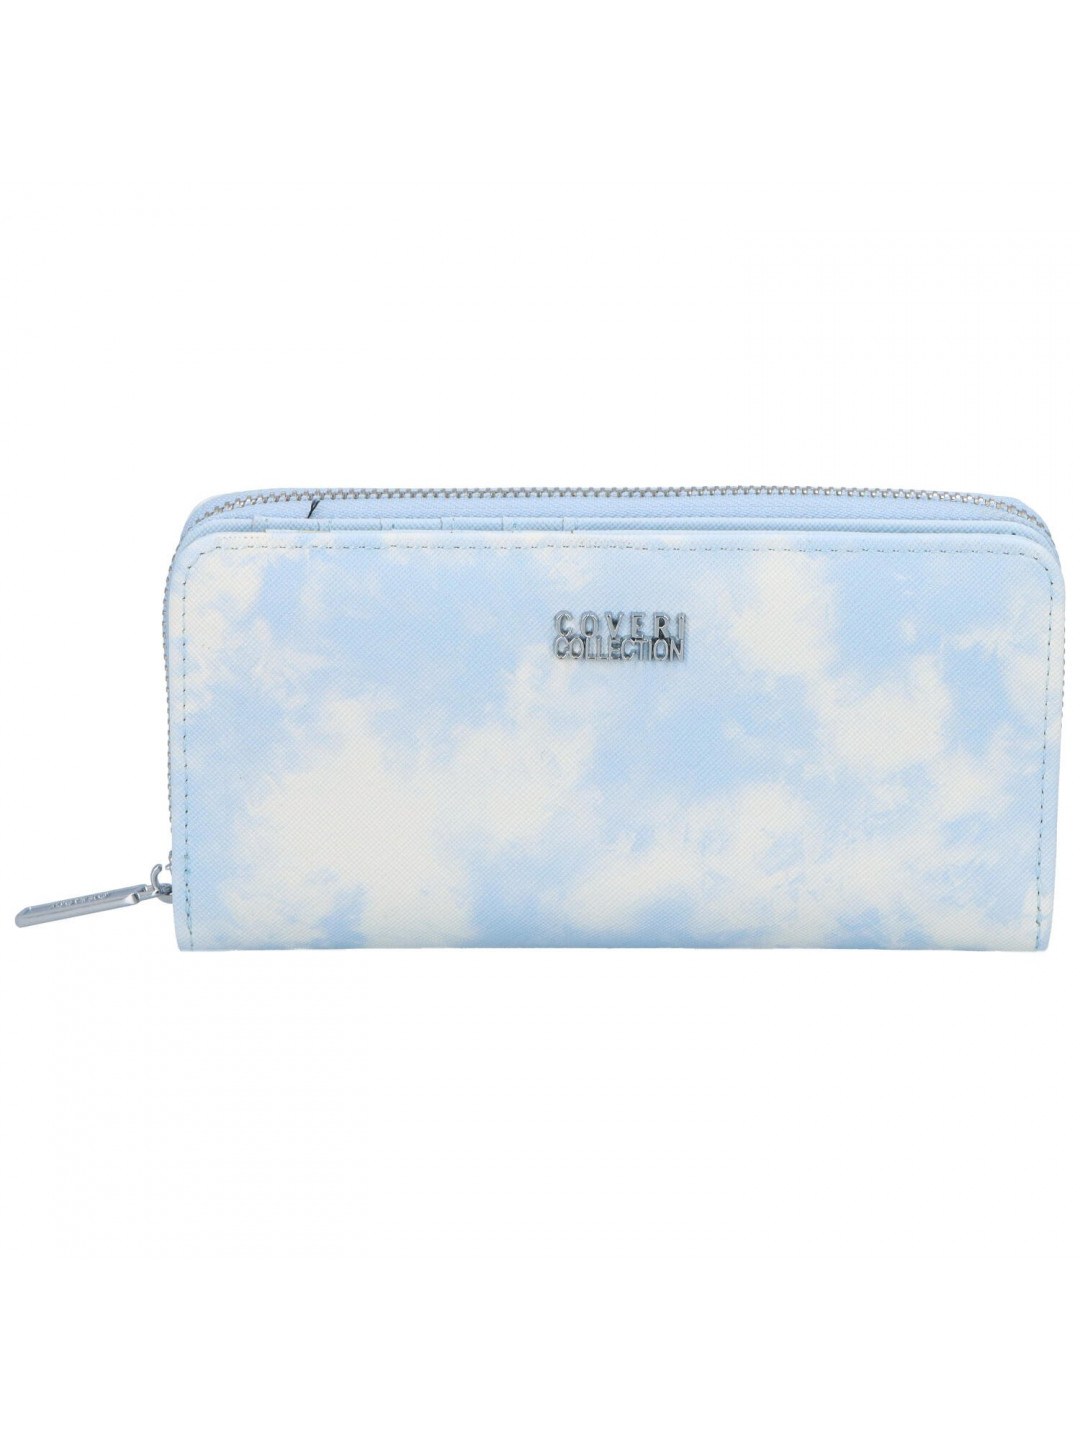 Trendová koženková peněženka Coveri Rita světle modrá